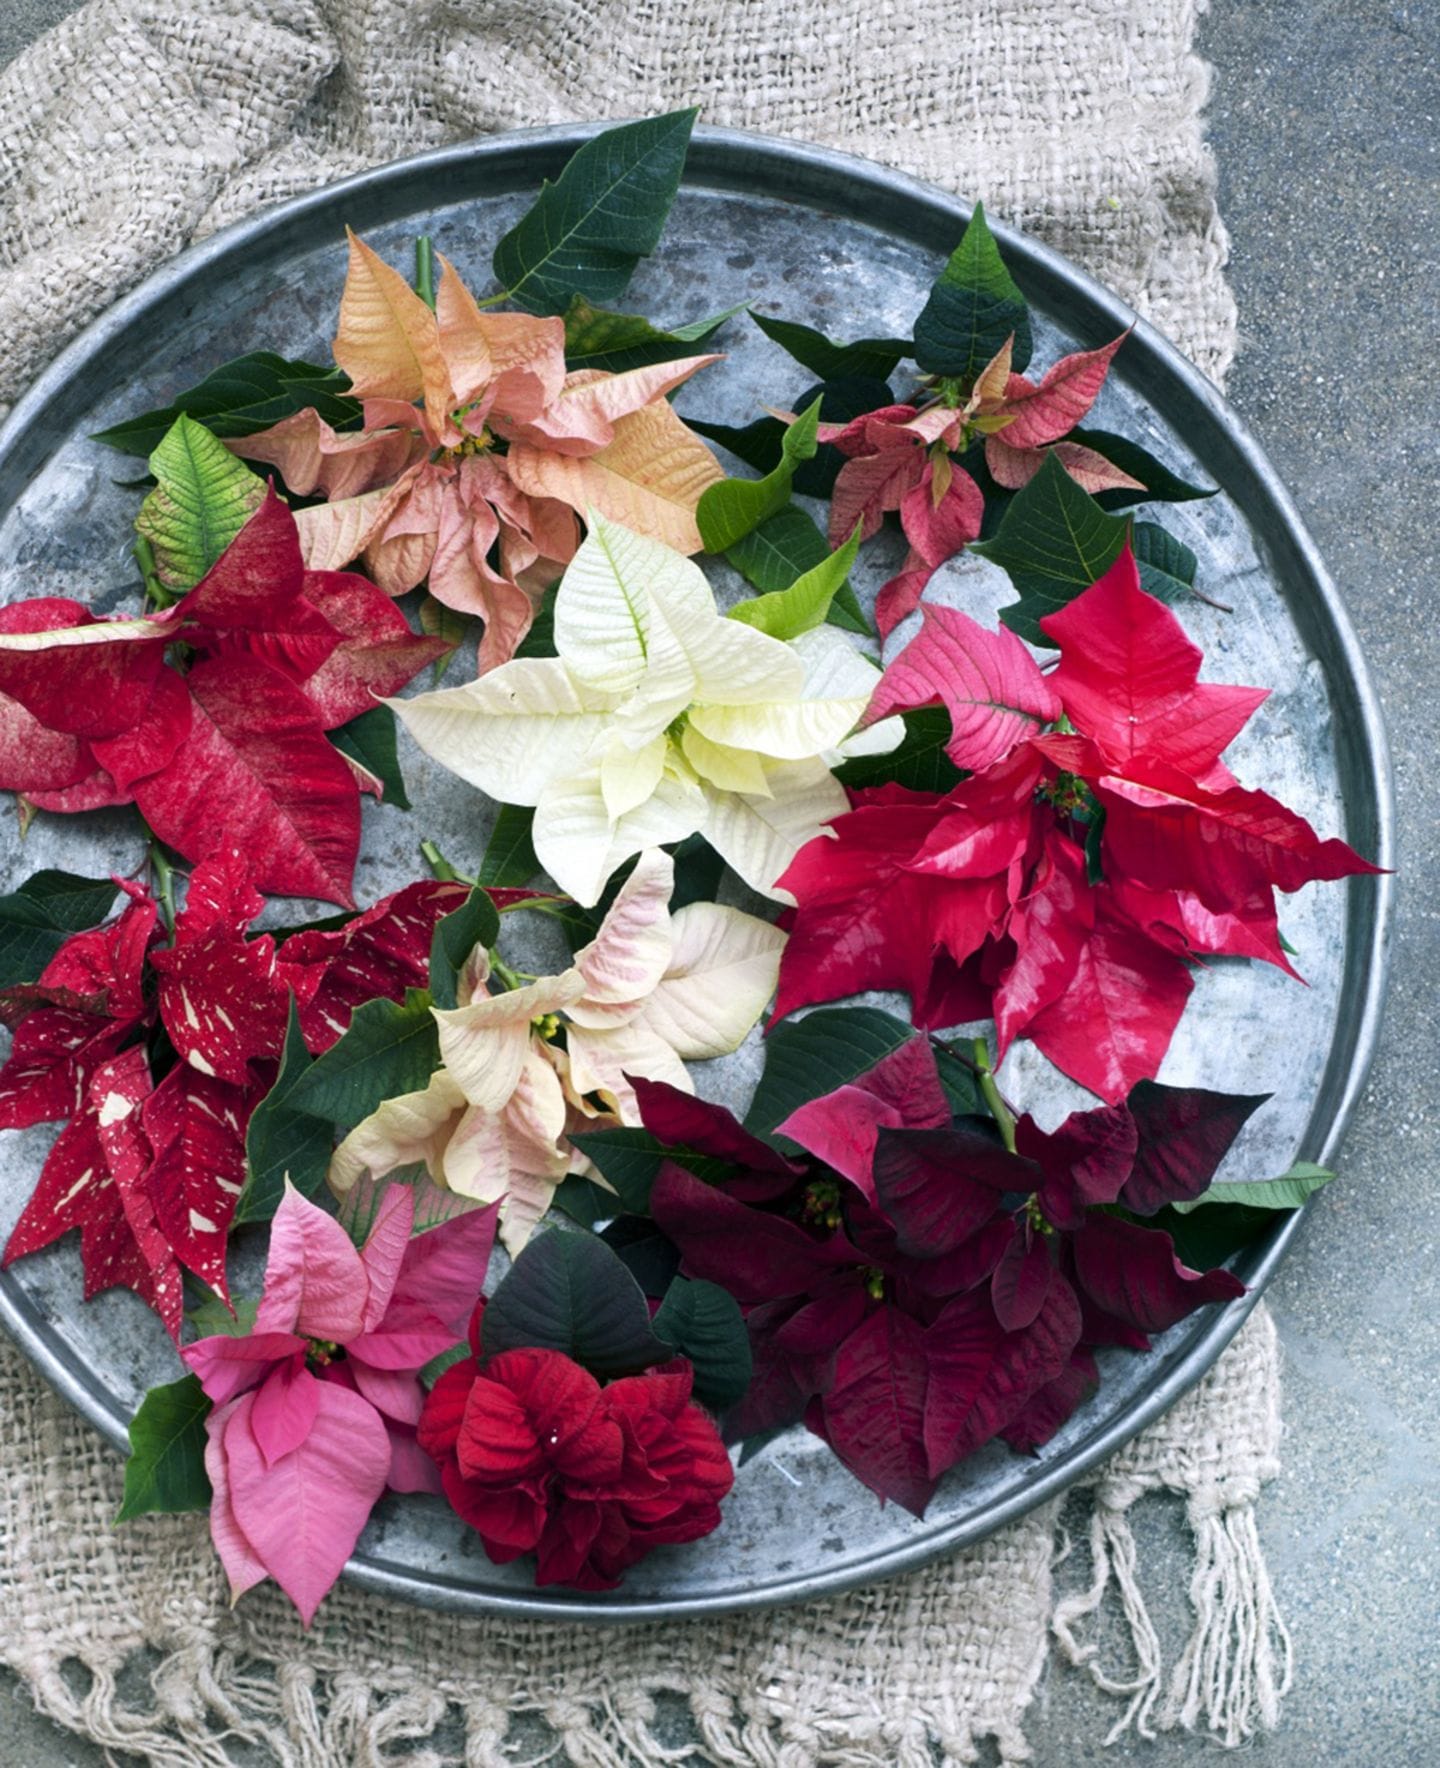 Pflanzen zu Weihnachten: Weihnachtsstern dekorieren